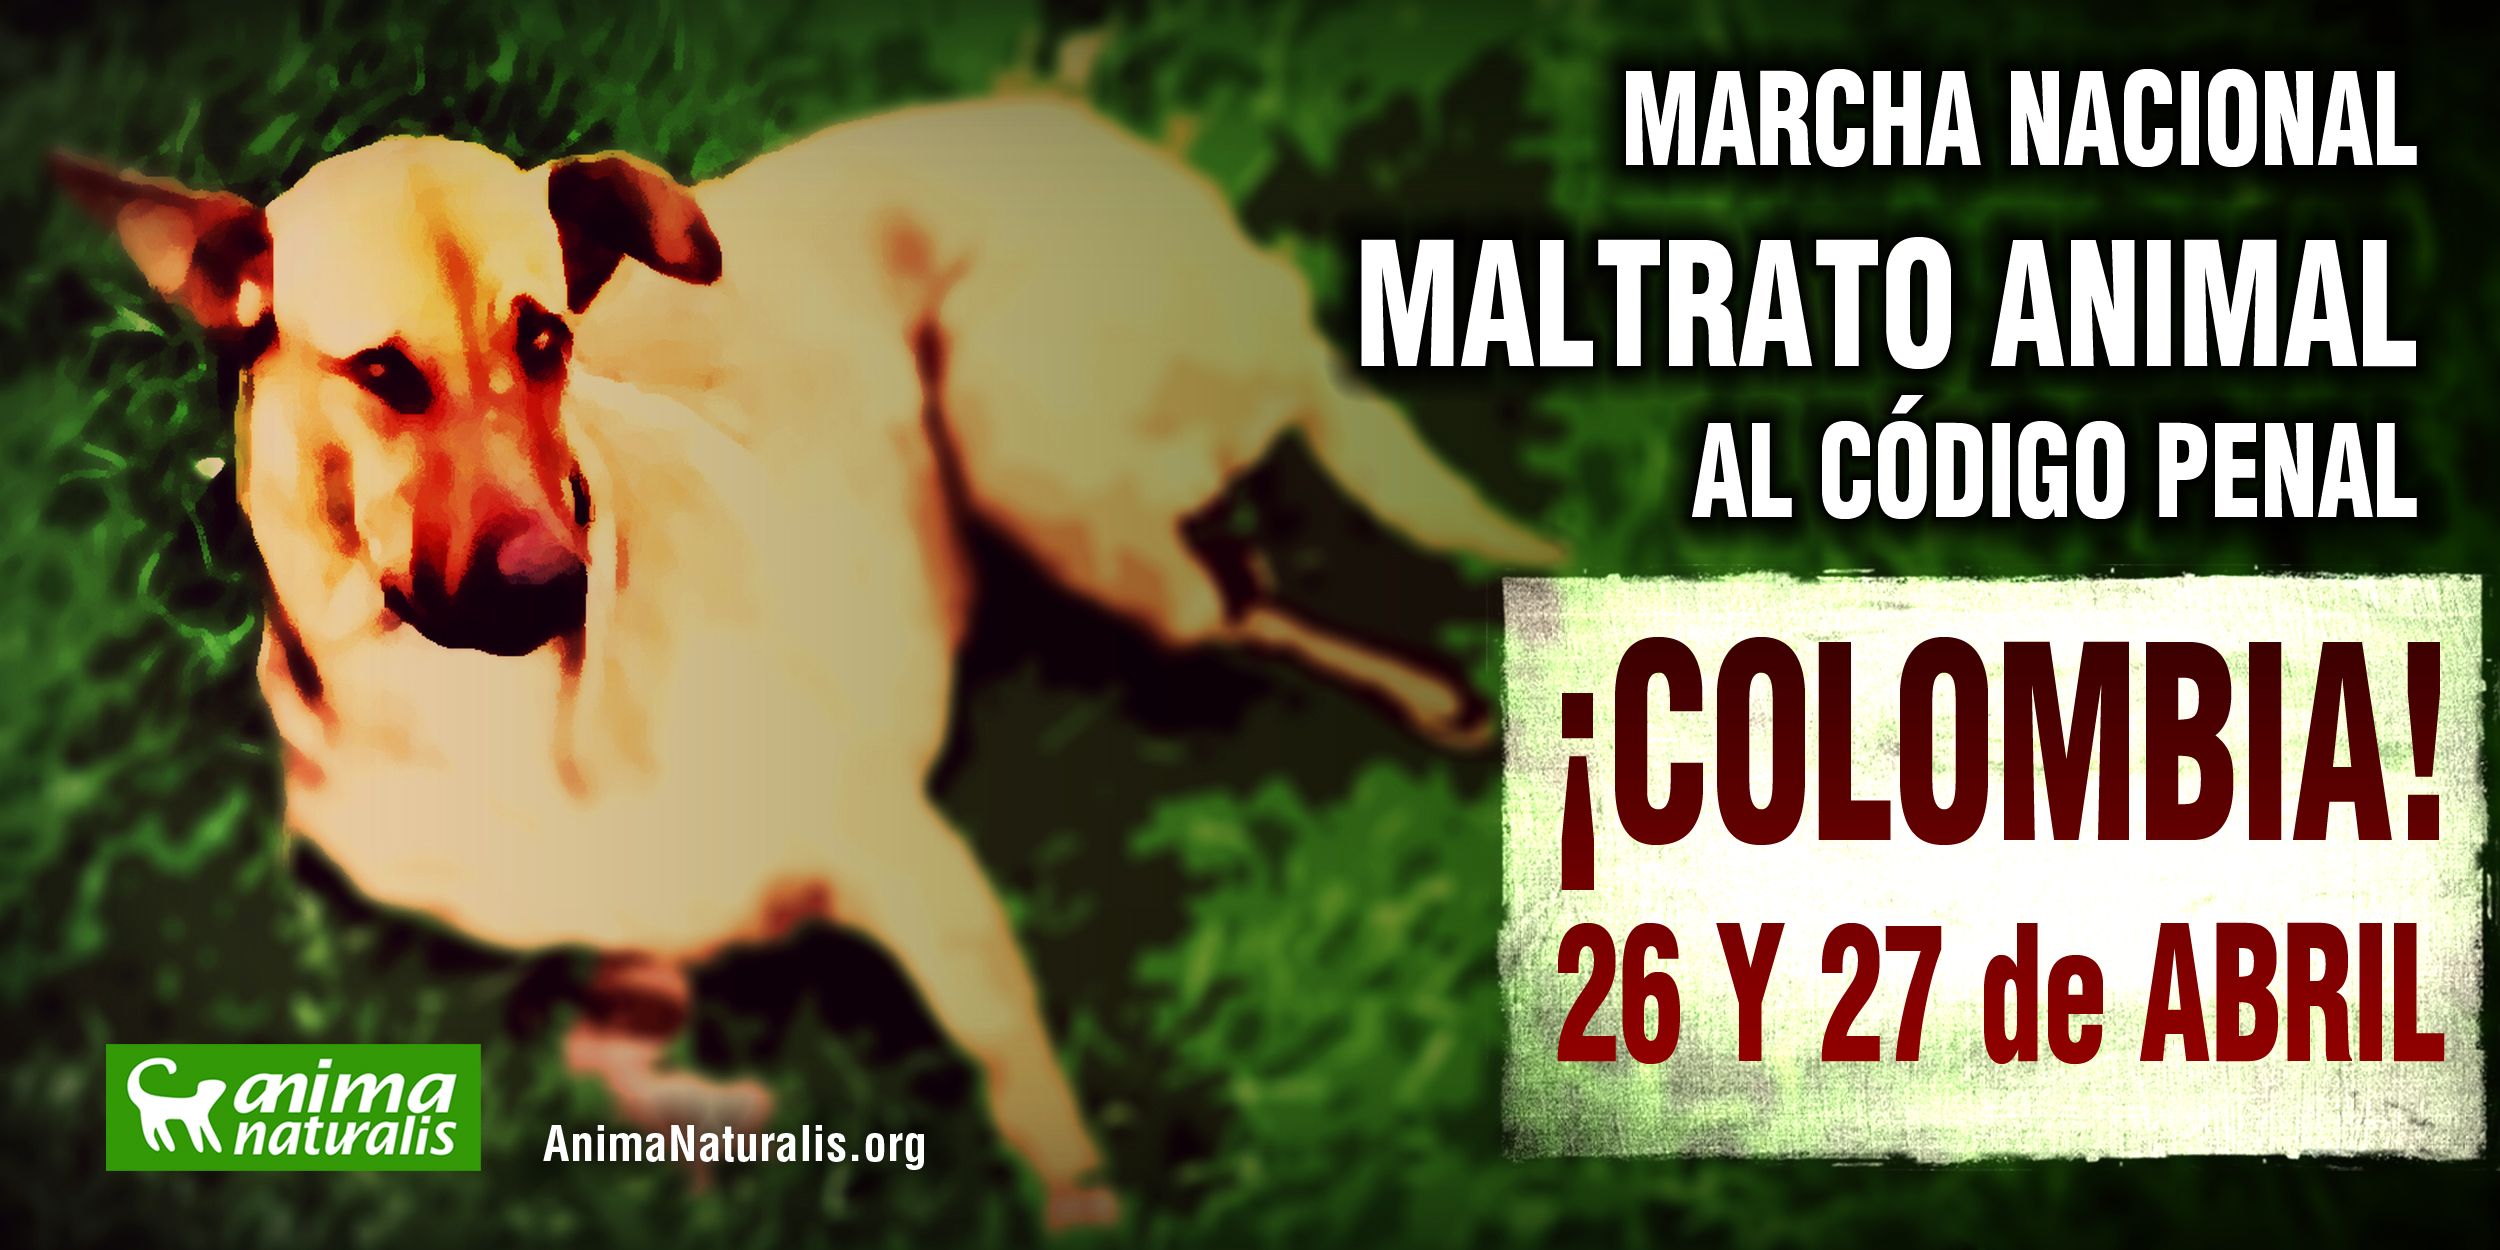 Marcha nacional 26 y 27 de abril  “Por una ley de protección animal con dientes”